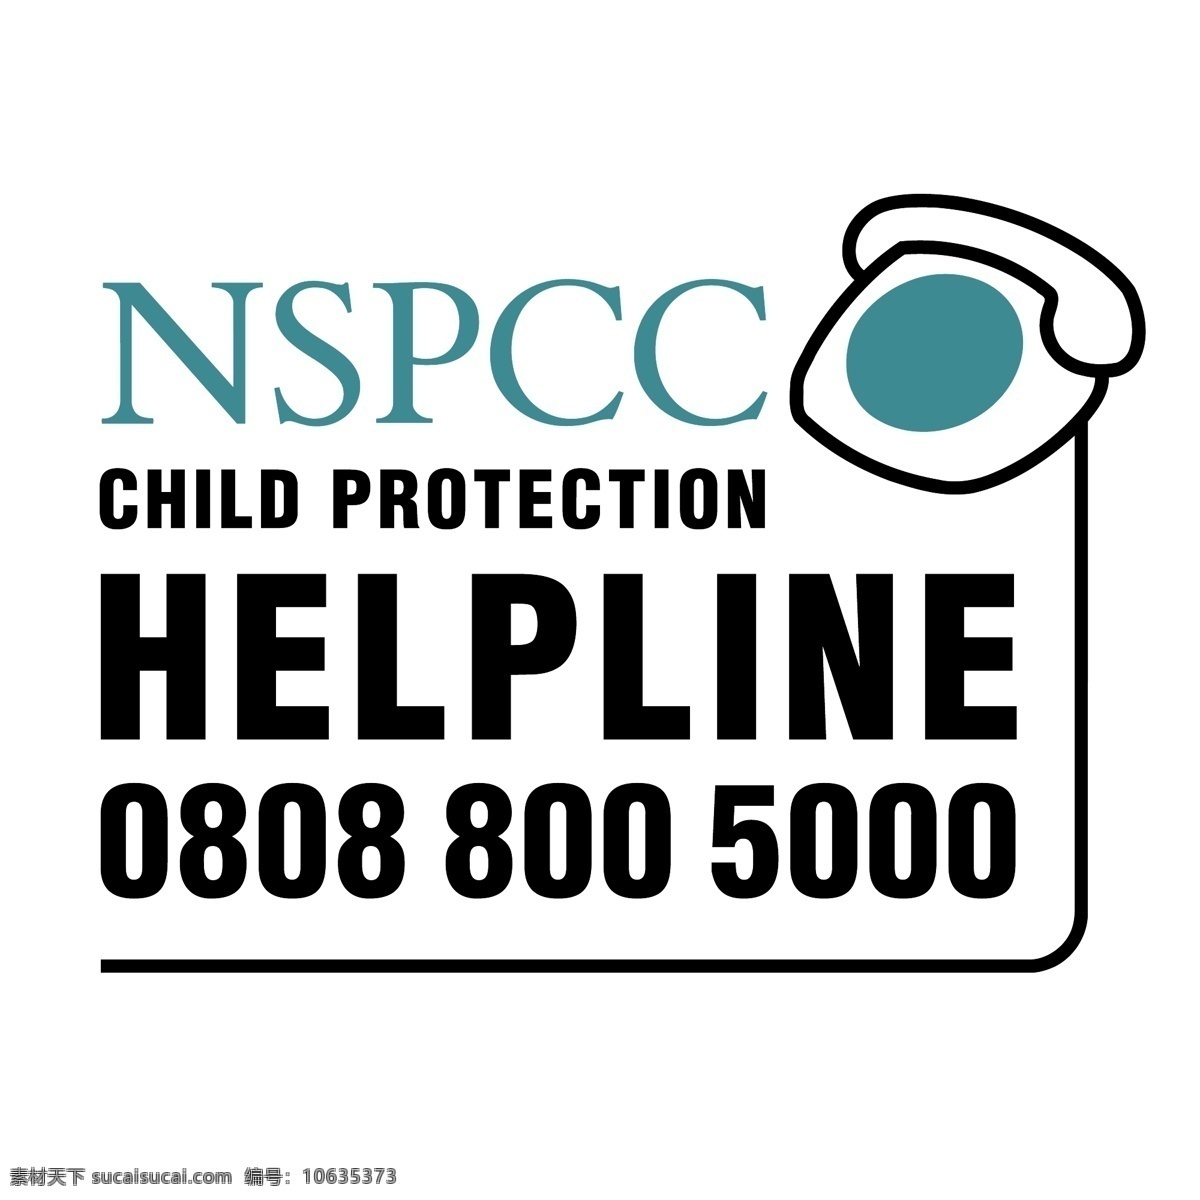 nspcc 保护 儿童 帮助 热线 标识 公司 免费 品牌 品牌标识 商标 矢量标志下载 免费矢量标识 矢量 psd源文件 logo设计